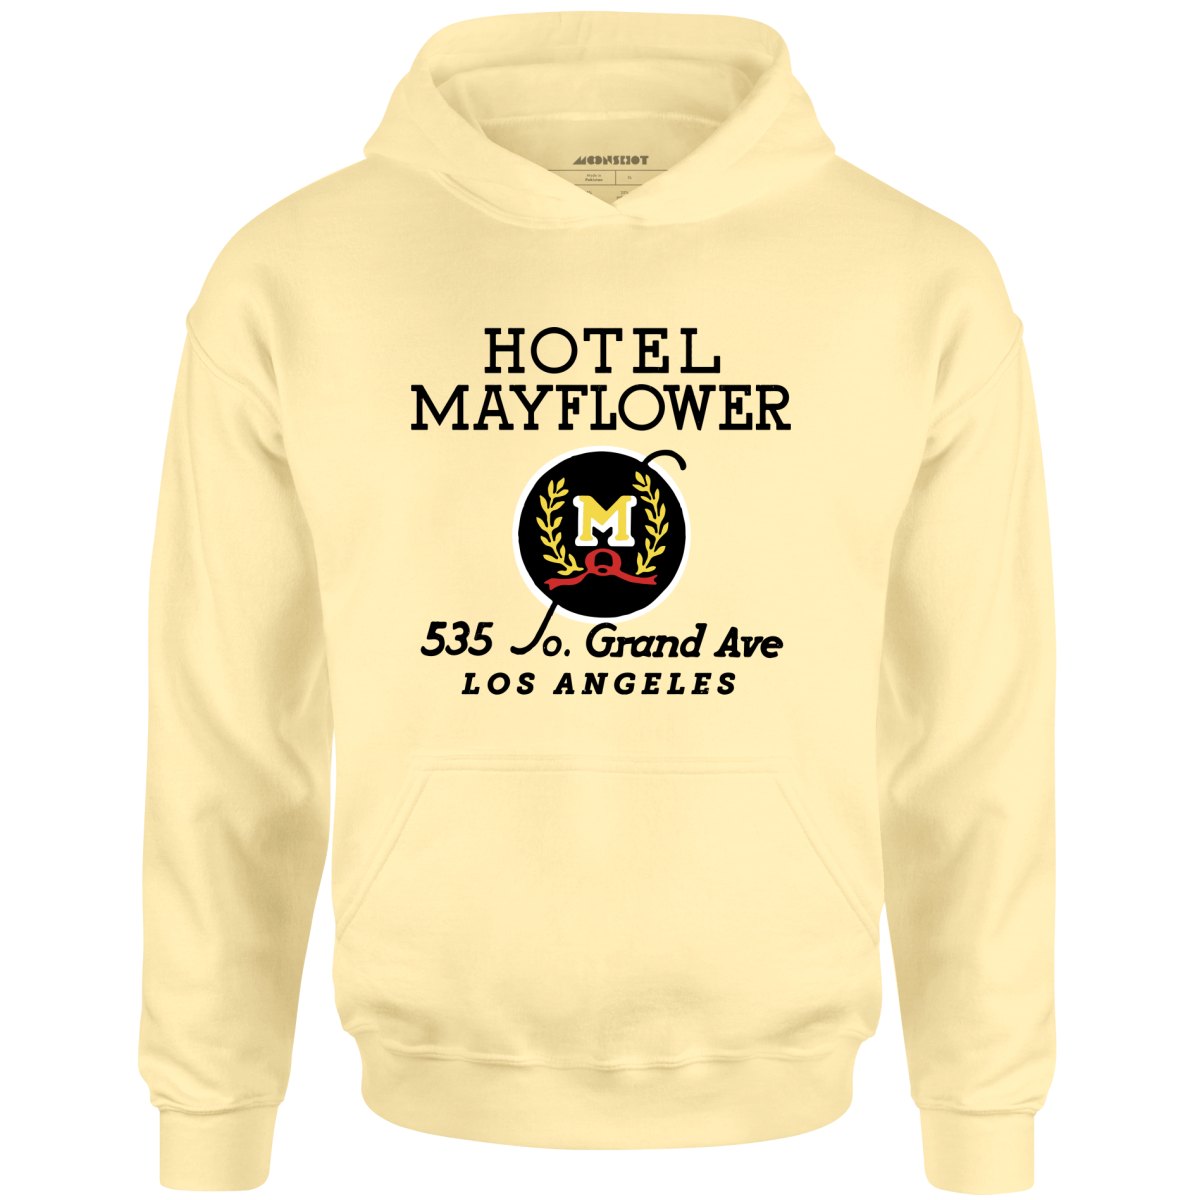 Hotel Mayflower - Los Angeles, CA - Vintage Hotel - Unisex Hoodie